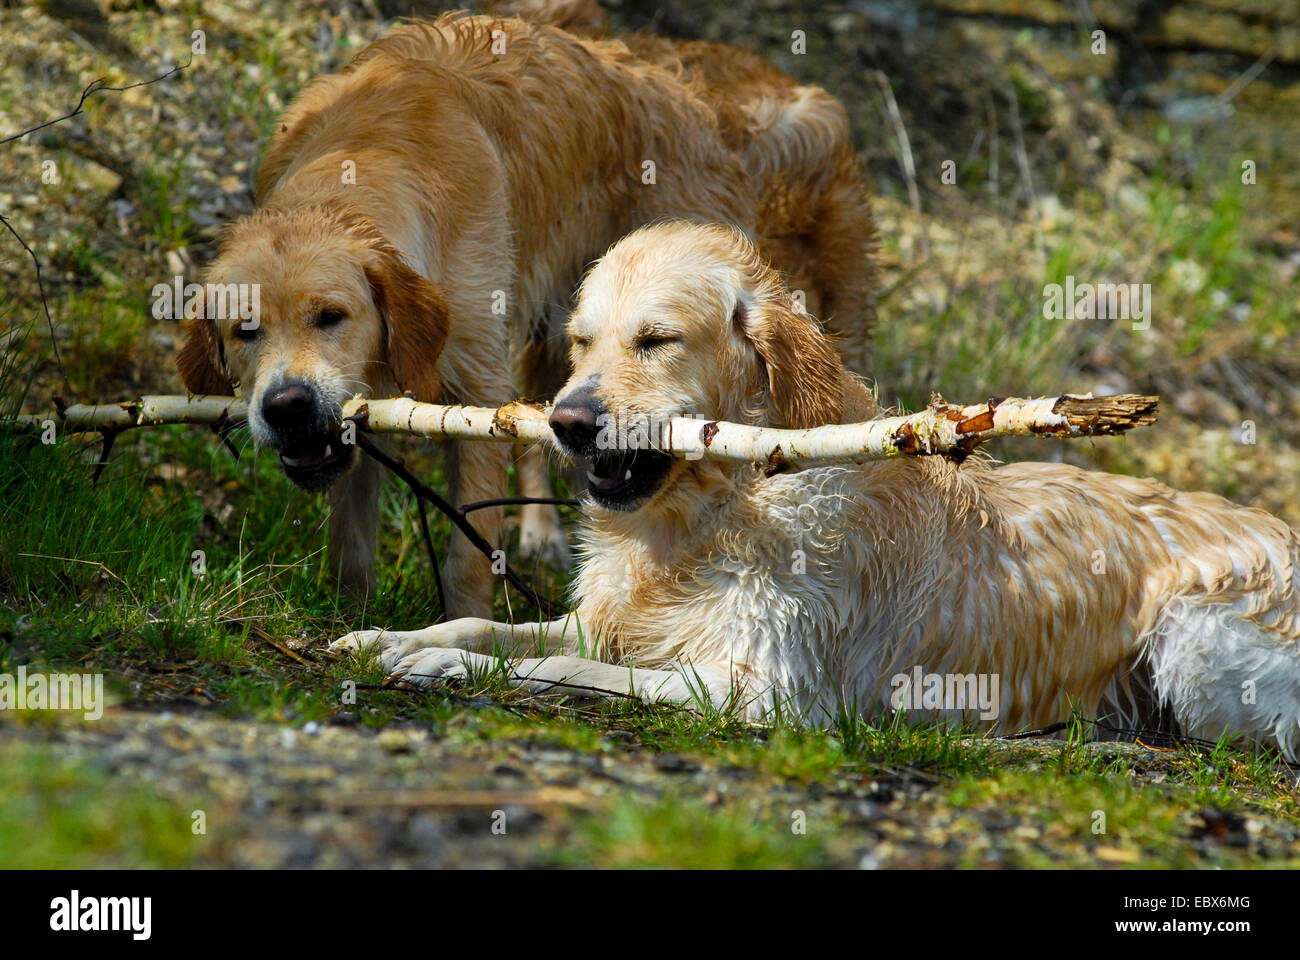 Golden Retriever (Canis Lupus F. Familiaris), zwei Hunde halten die Sam  Birke Branch in den Mund, Deutschland Stockfotografie - Alamy